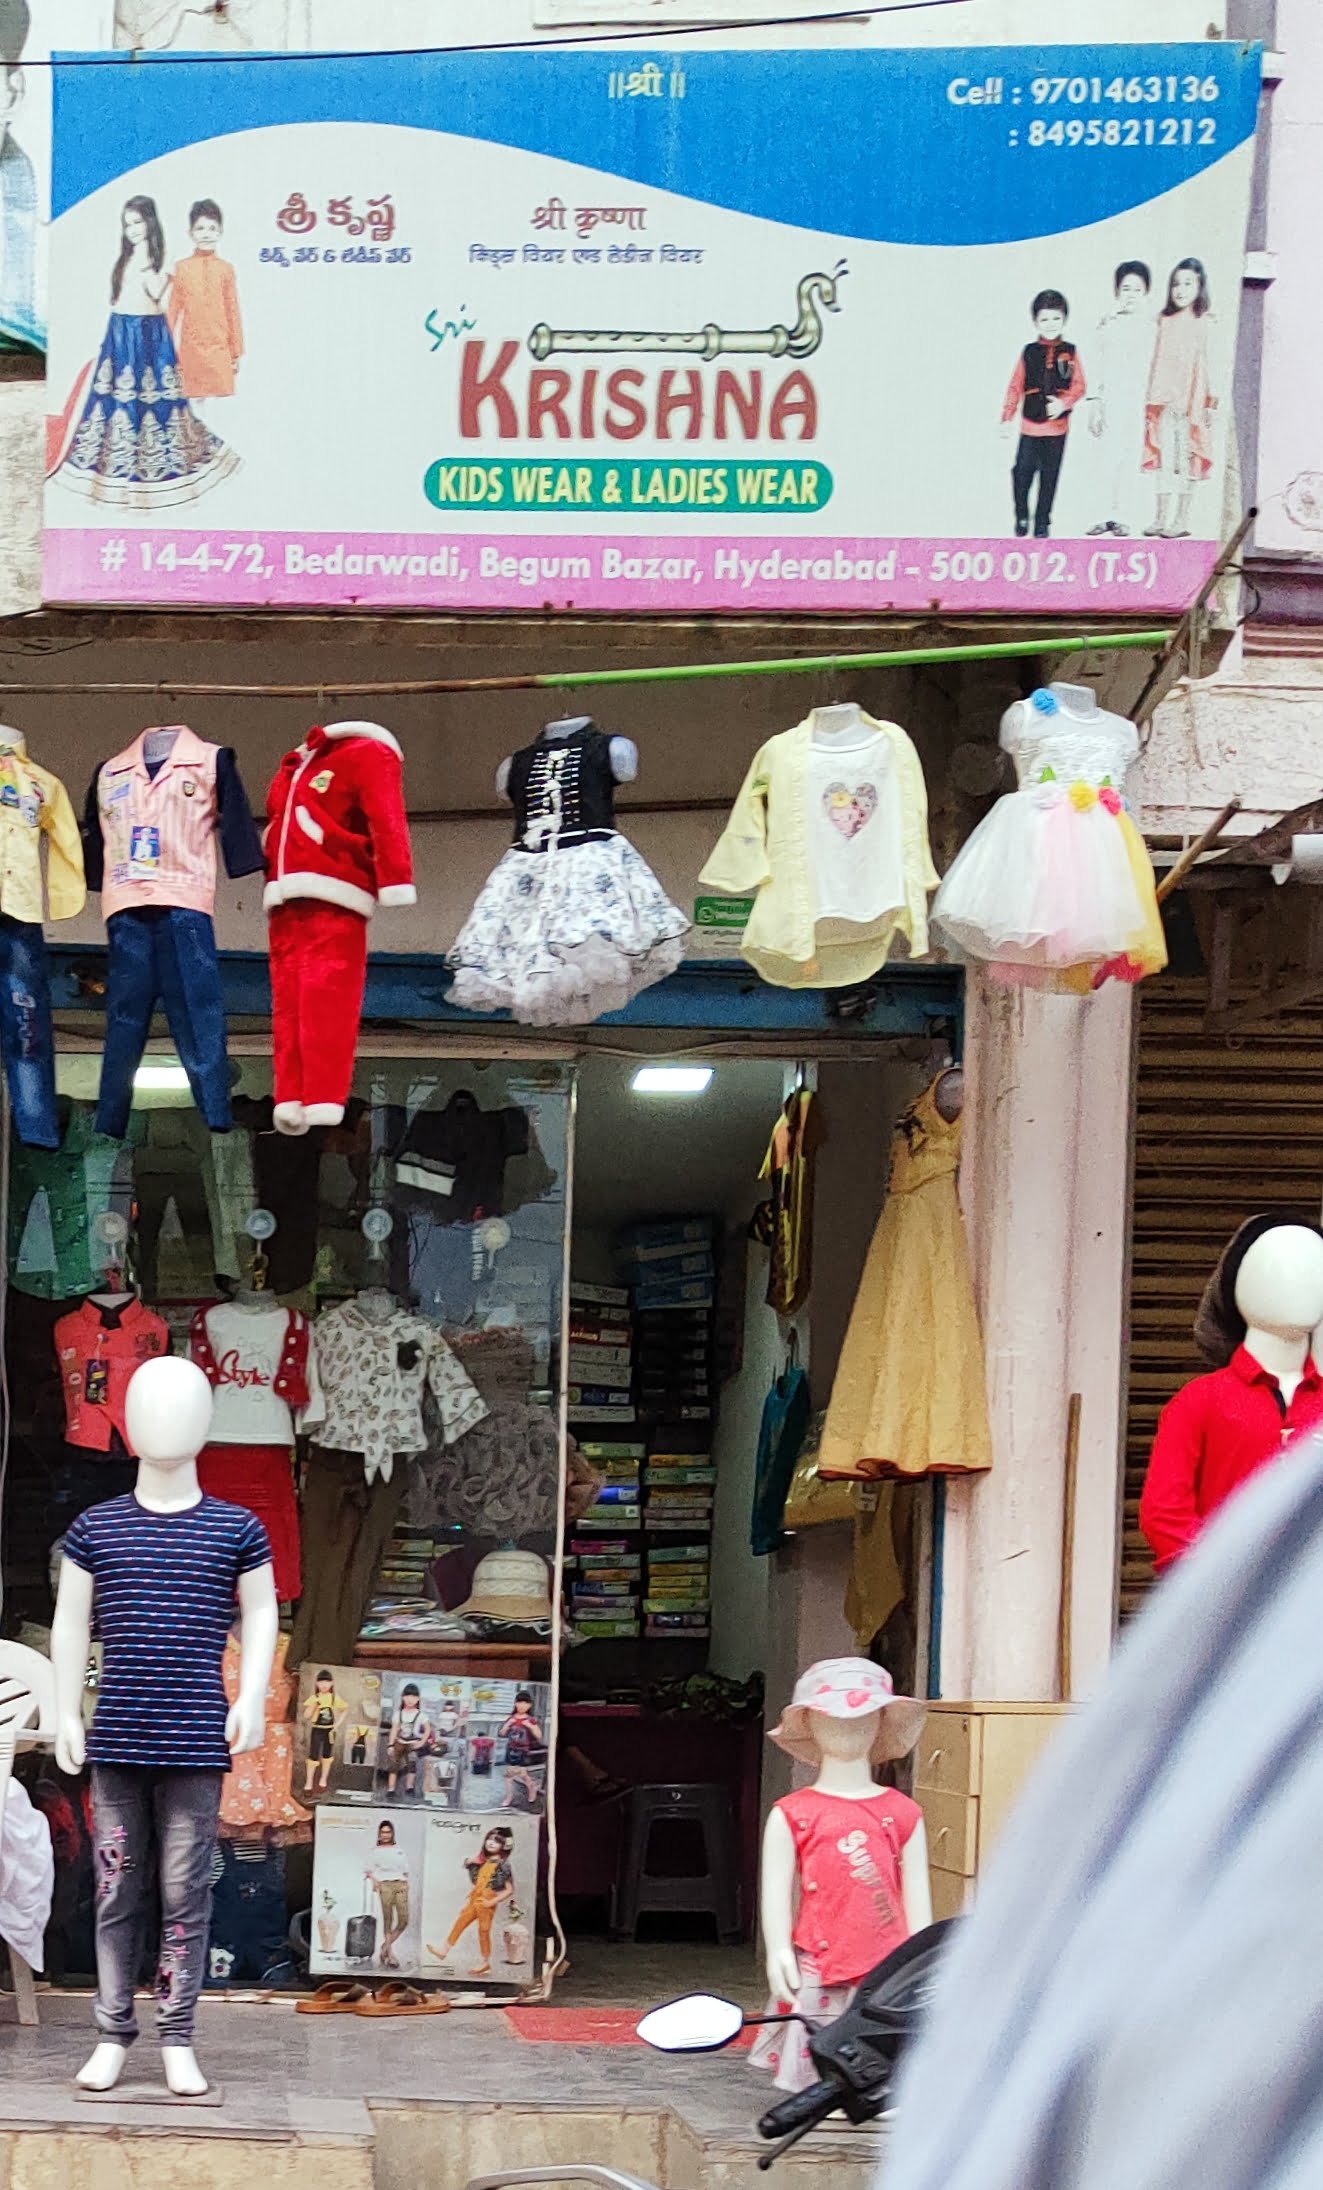 Krishna Ladies Wear and Kids Wear in Begum Bazar